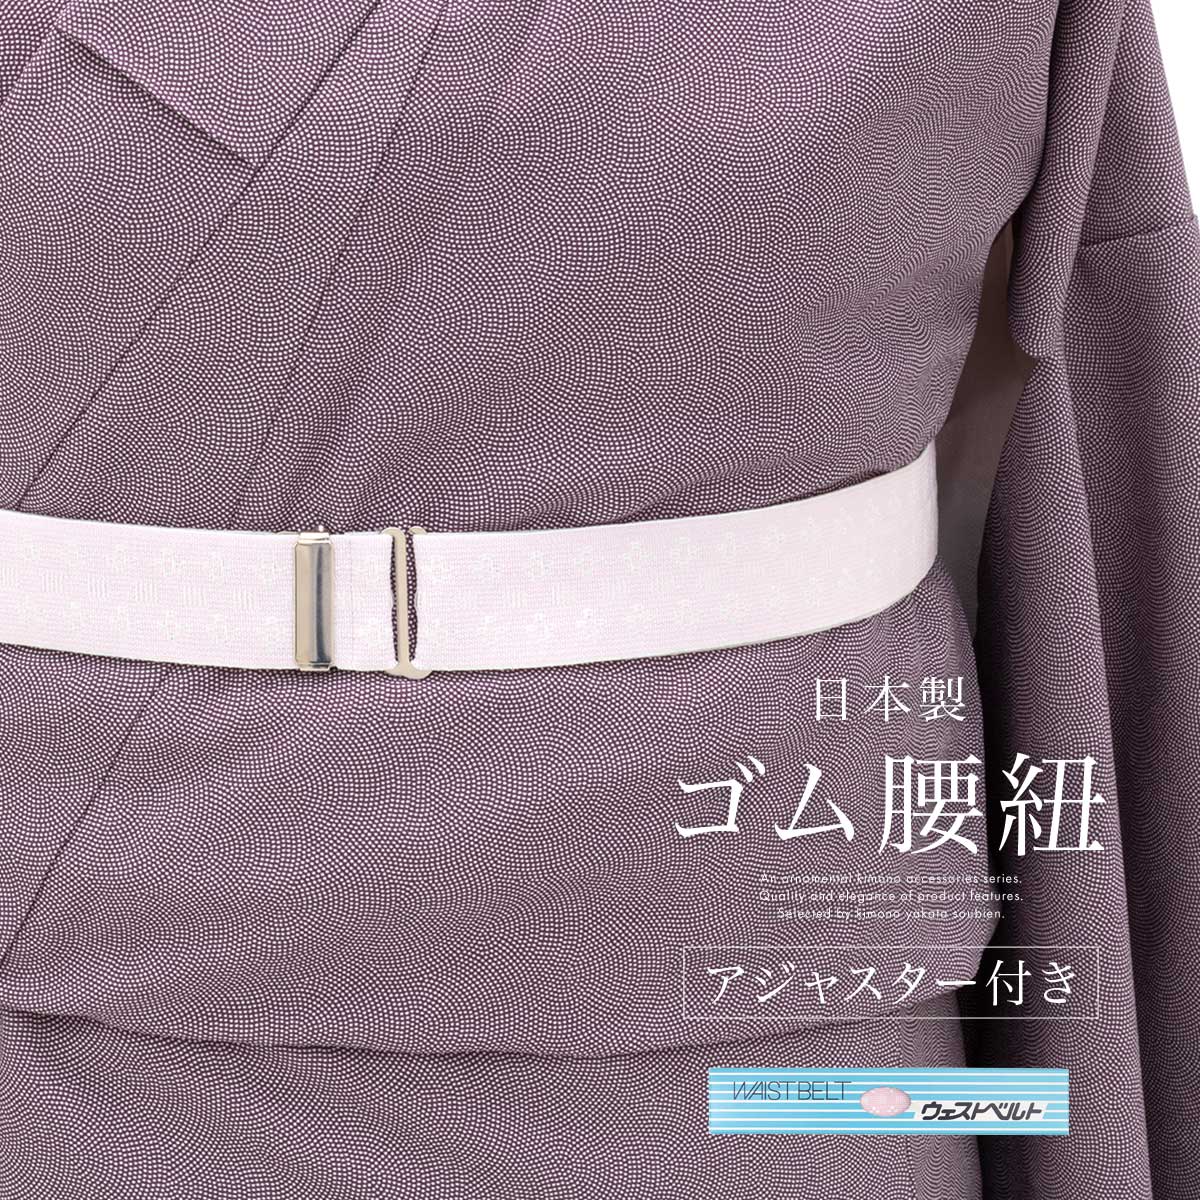 ウエストベルト 腰紐 着物ベルト ゴムベルト 日本製 レディース 女性 大人 通年 着付け小物 あづま姿 あす楽対応商品 メール便